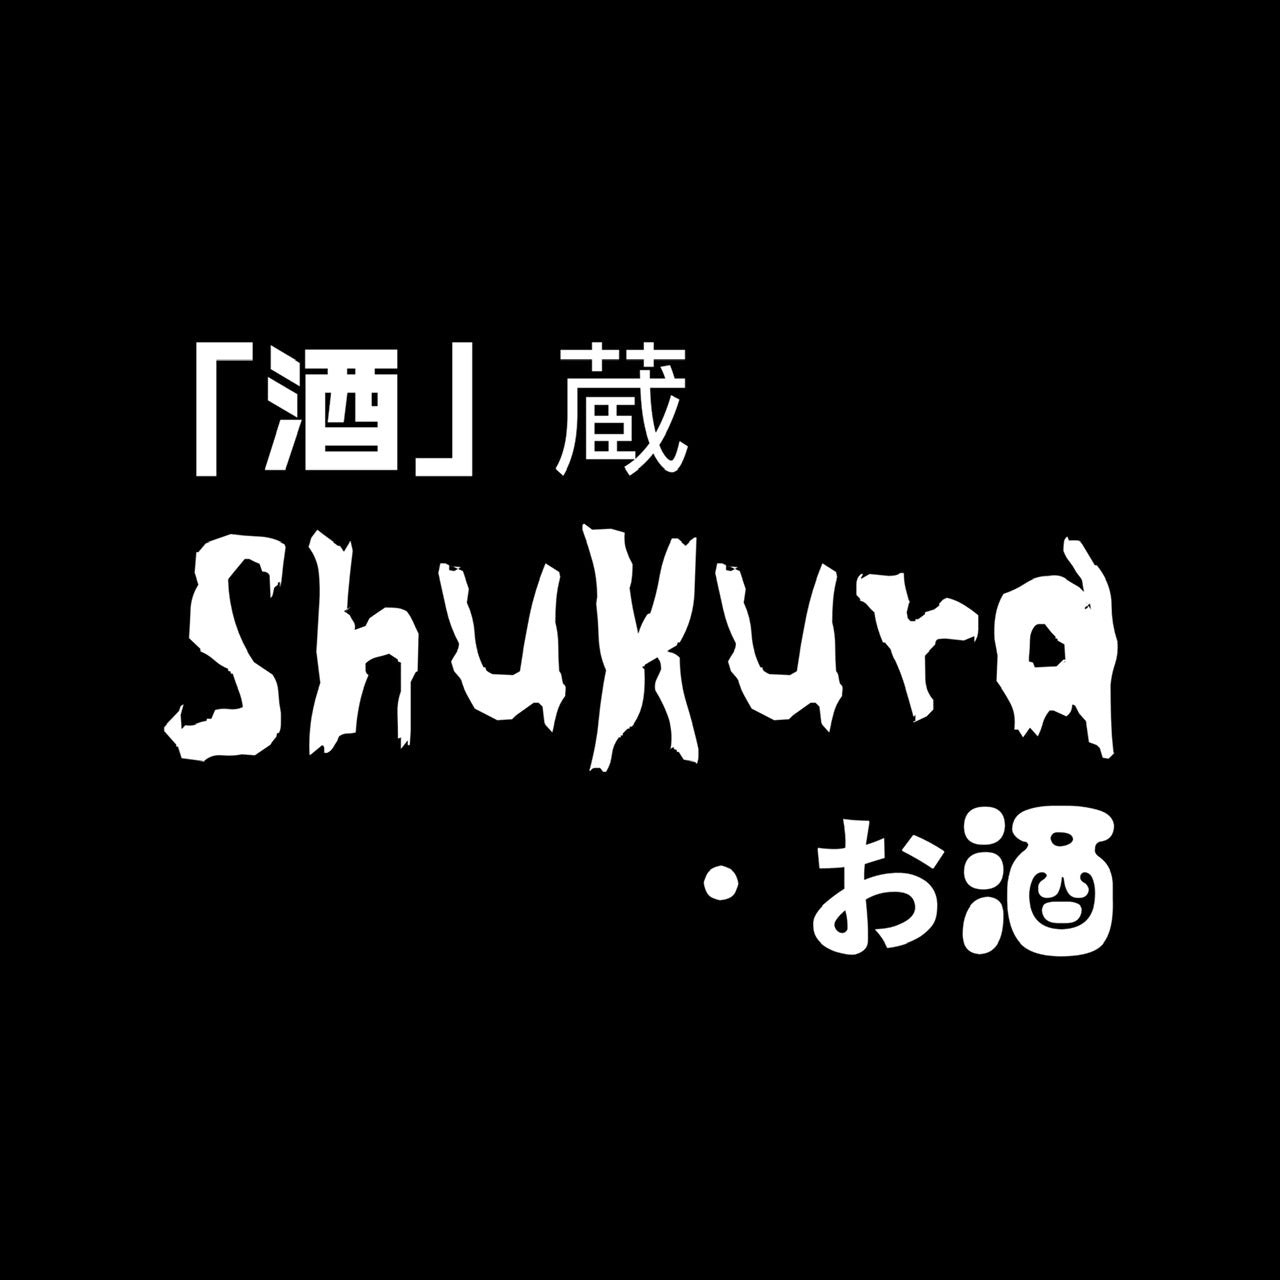 酒蔵·ShuKura 清酒專門店